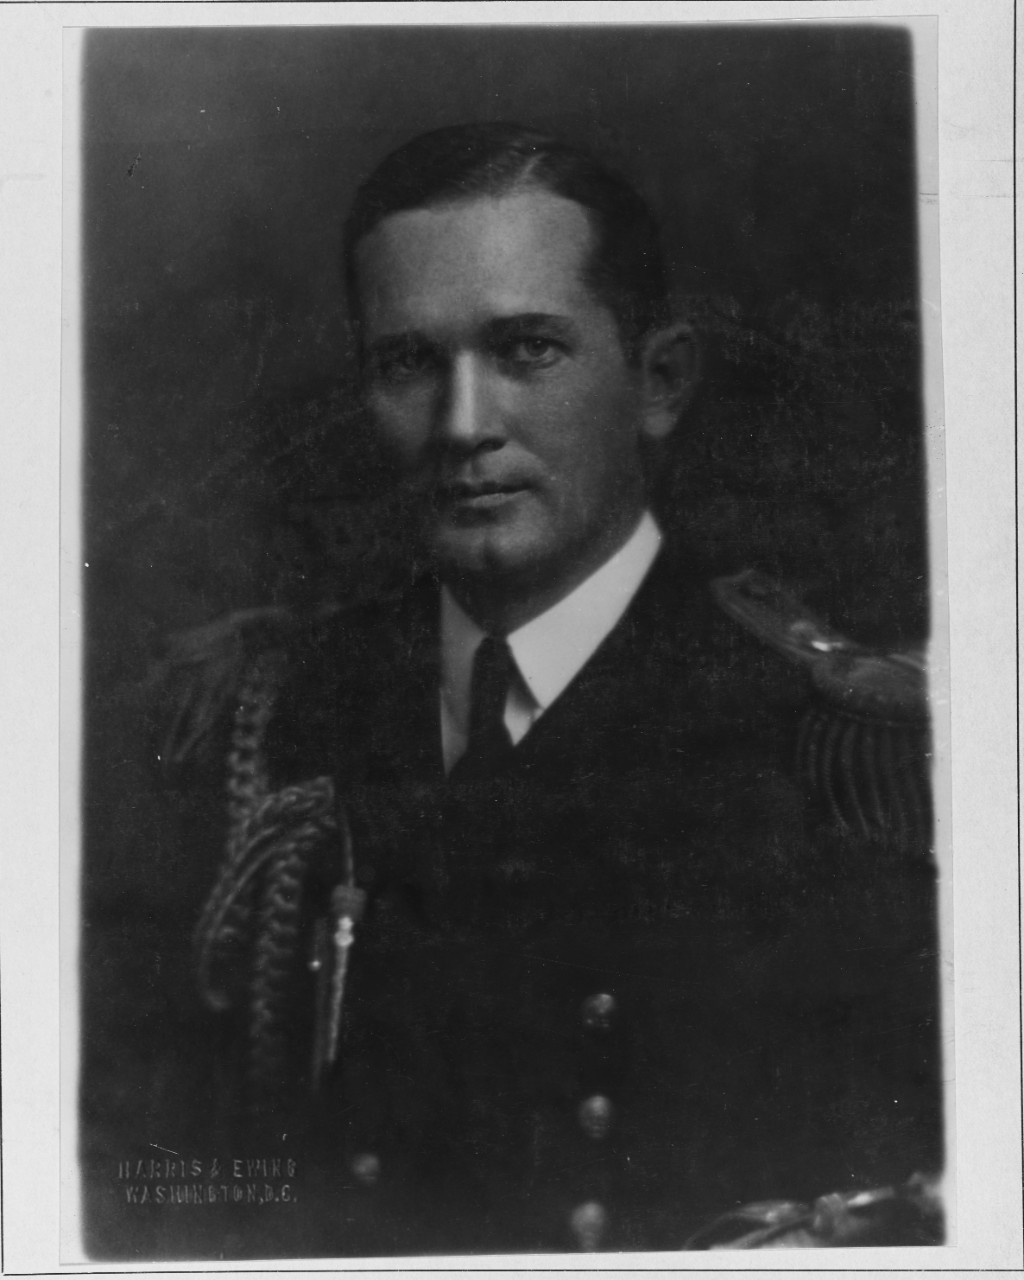 Lieutenant Kenneth M. Hoeffel, USN